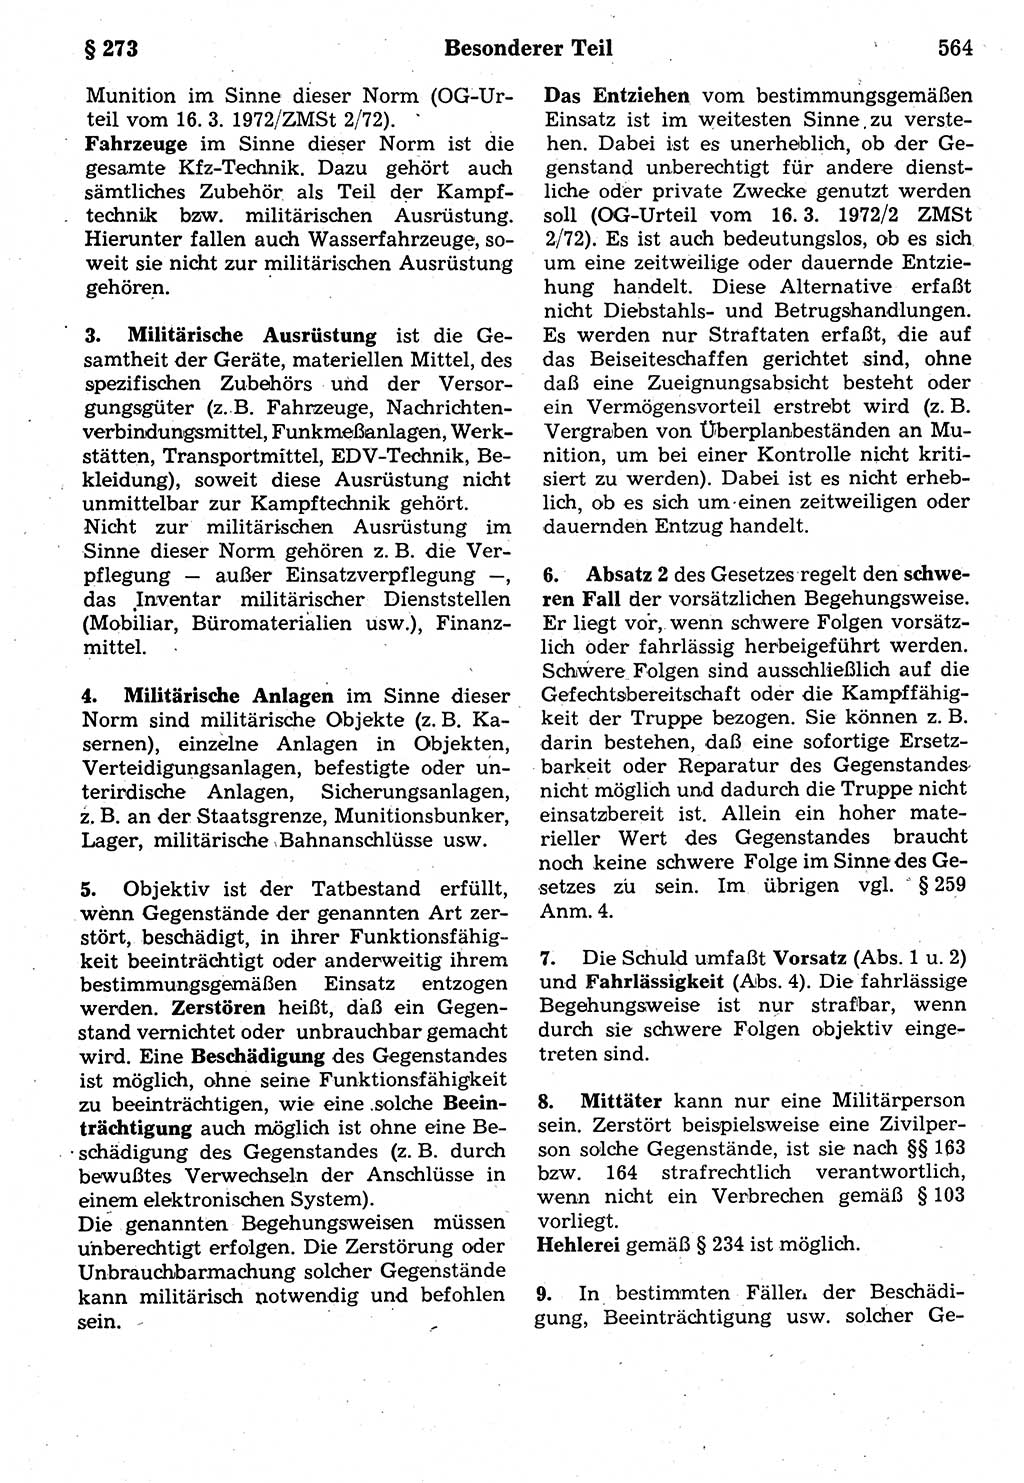 Strafrecht der Deutschen Demokratischen Republik (DDR), Kommentar zum Strafgesetzbuch (StGB) 1987, Seite 564 (Strafr. DDR Komm. StGB 1987, S. 564)